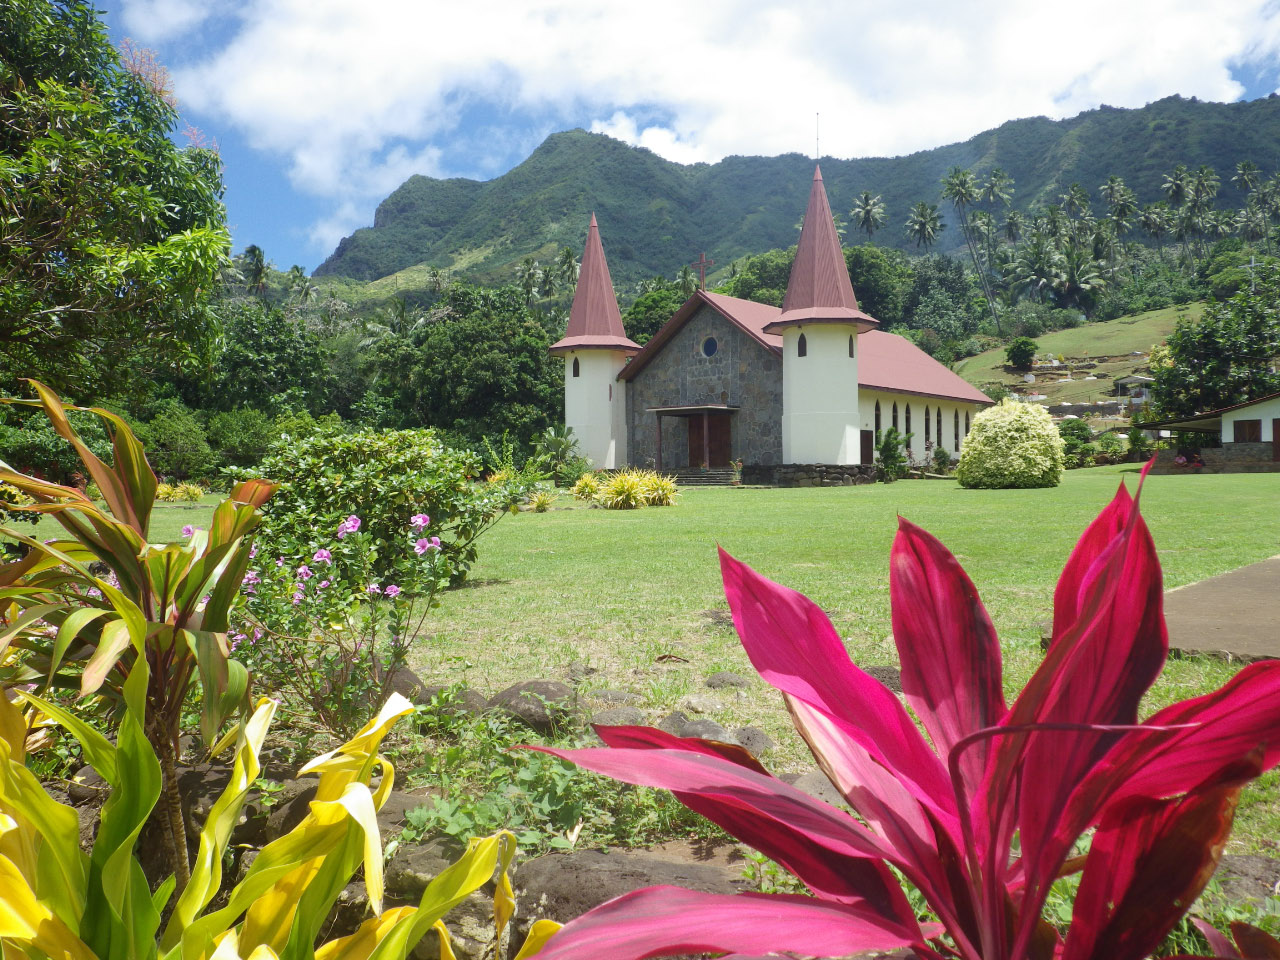 Omniprésence des églises Chrétiennes en Polynésie. Les différentes églises se livrèrent à une concurrence implacable en soutien des conquêtes coloniales